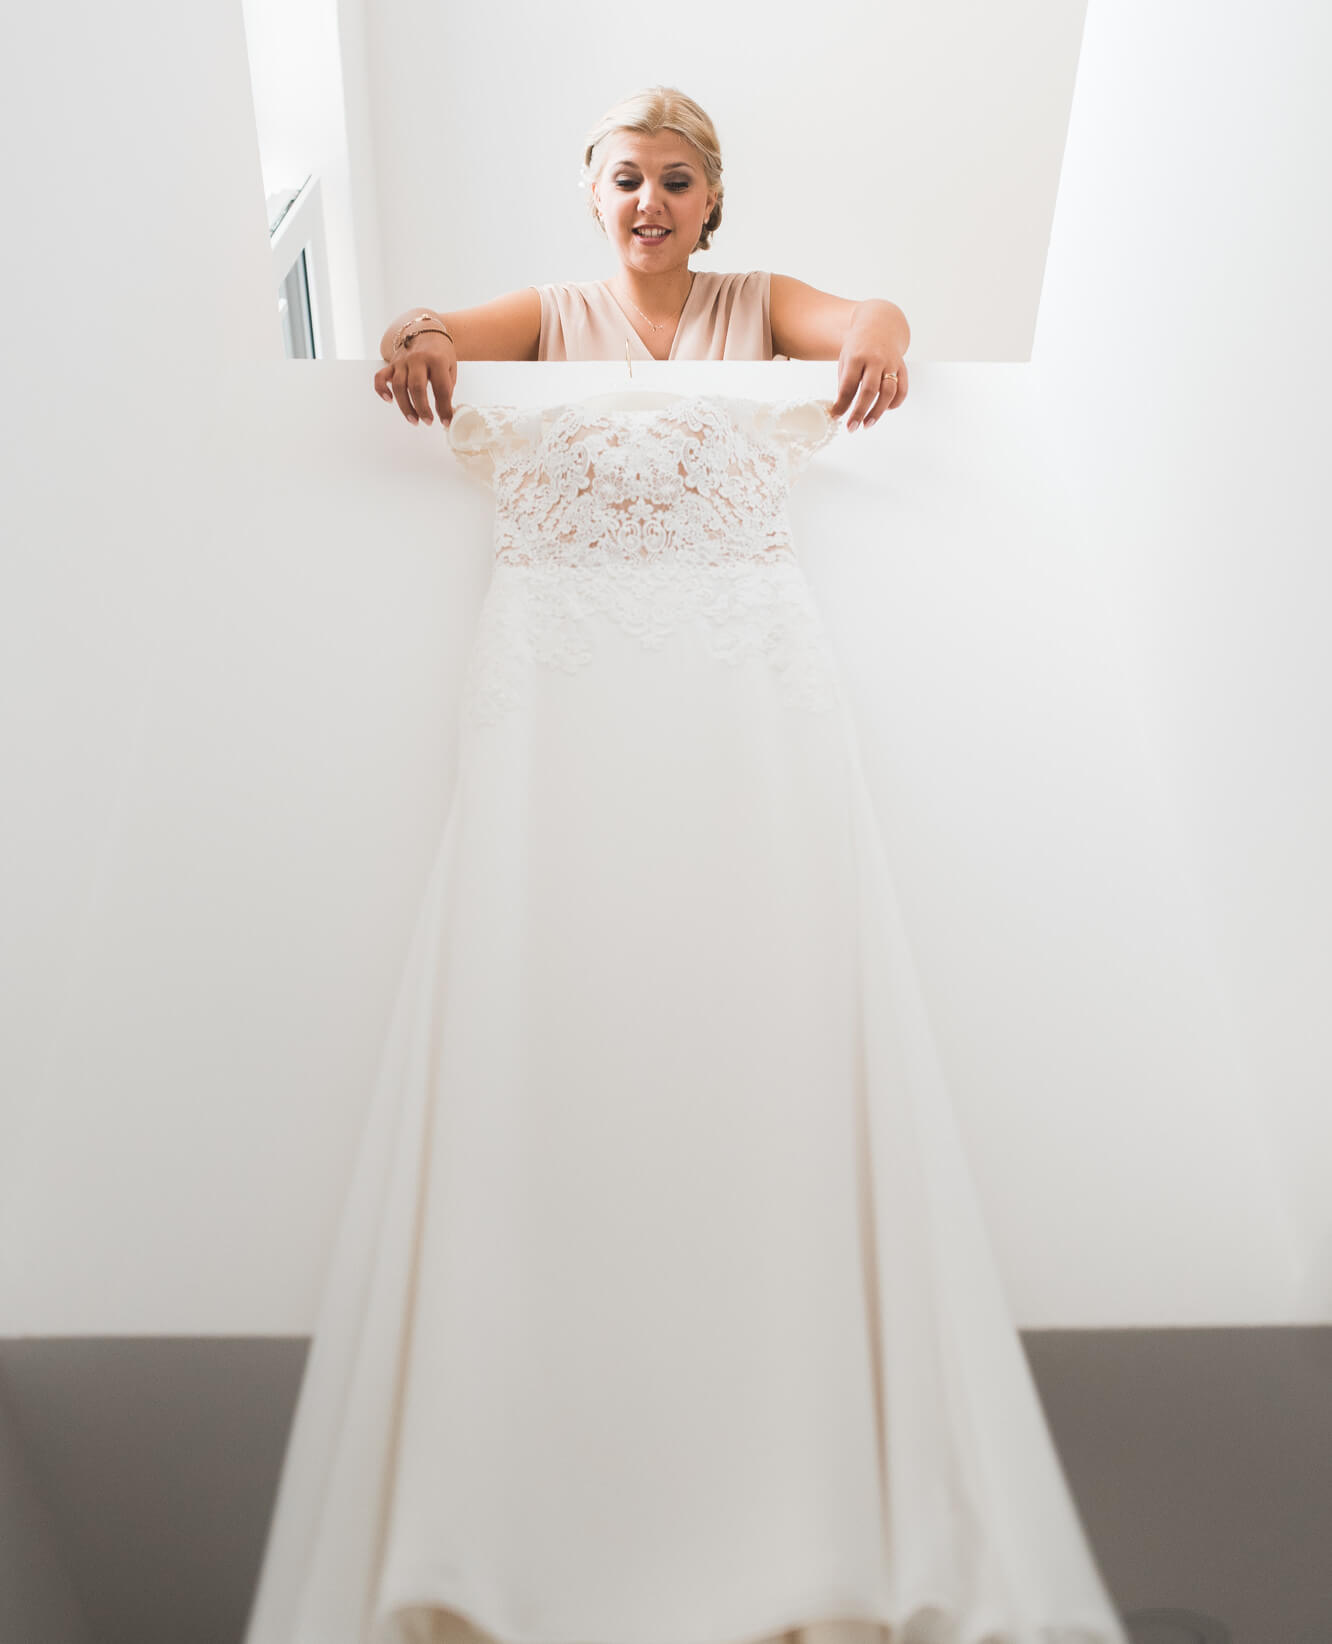 Braut hängt Hochzeitskleid von Rembo Styling in der Wohnung auf